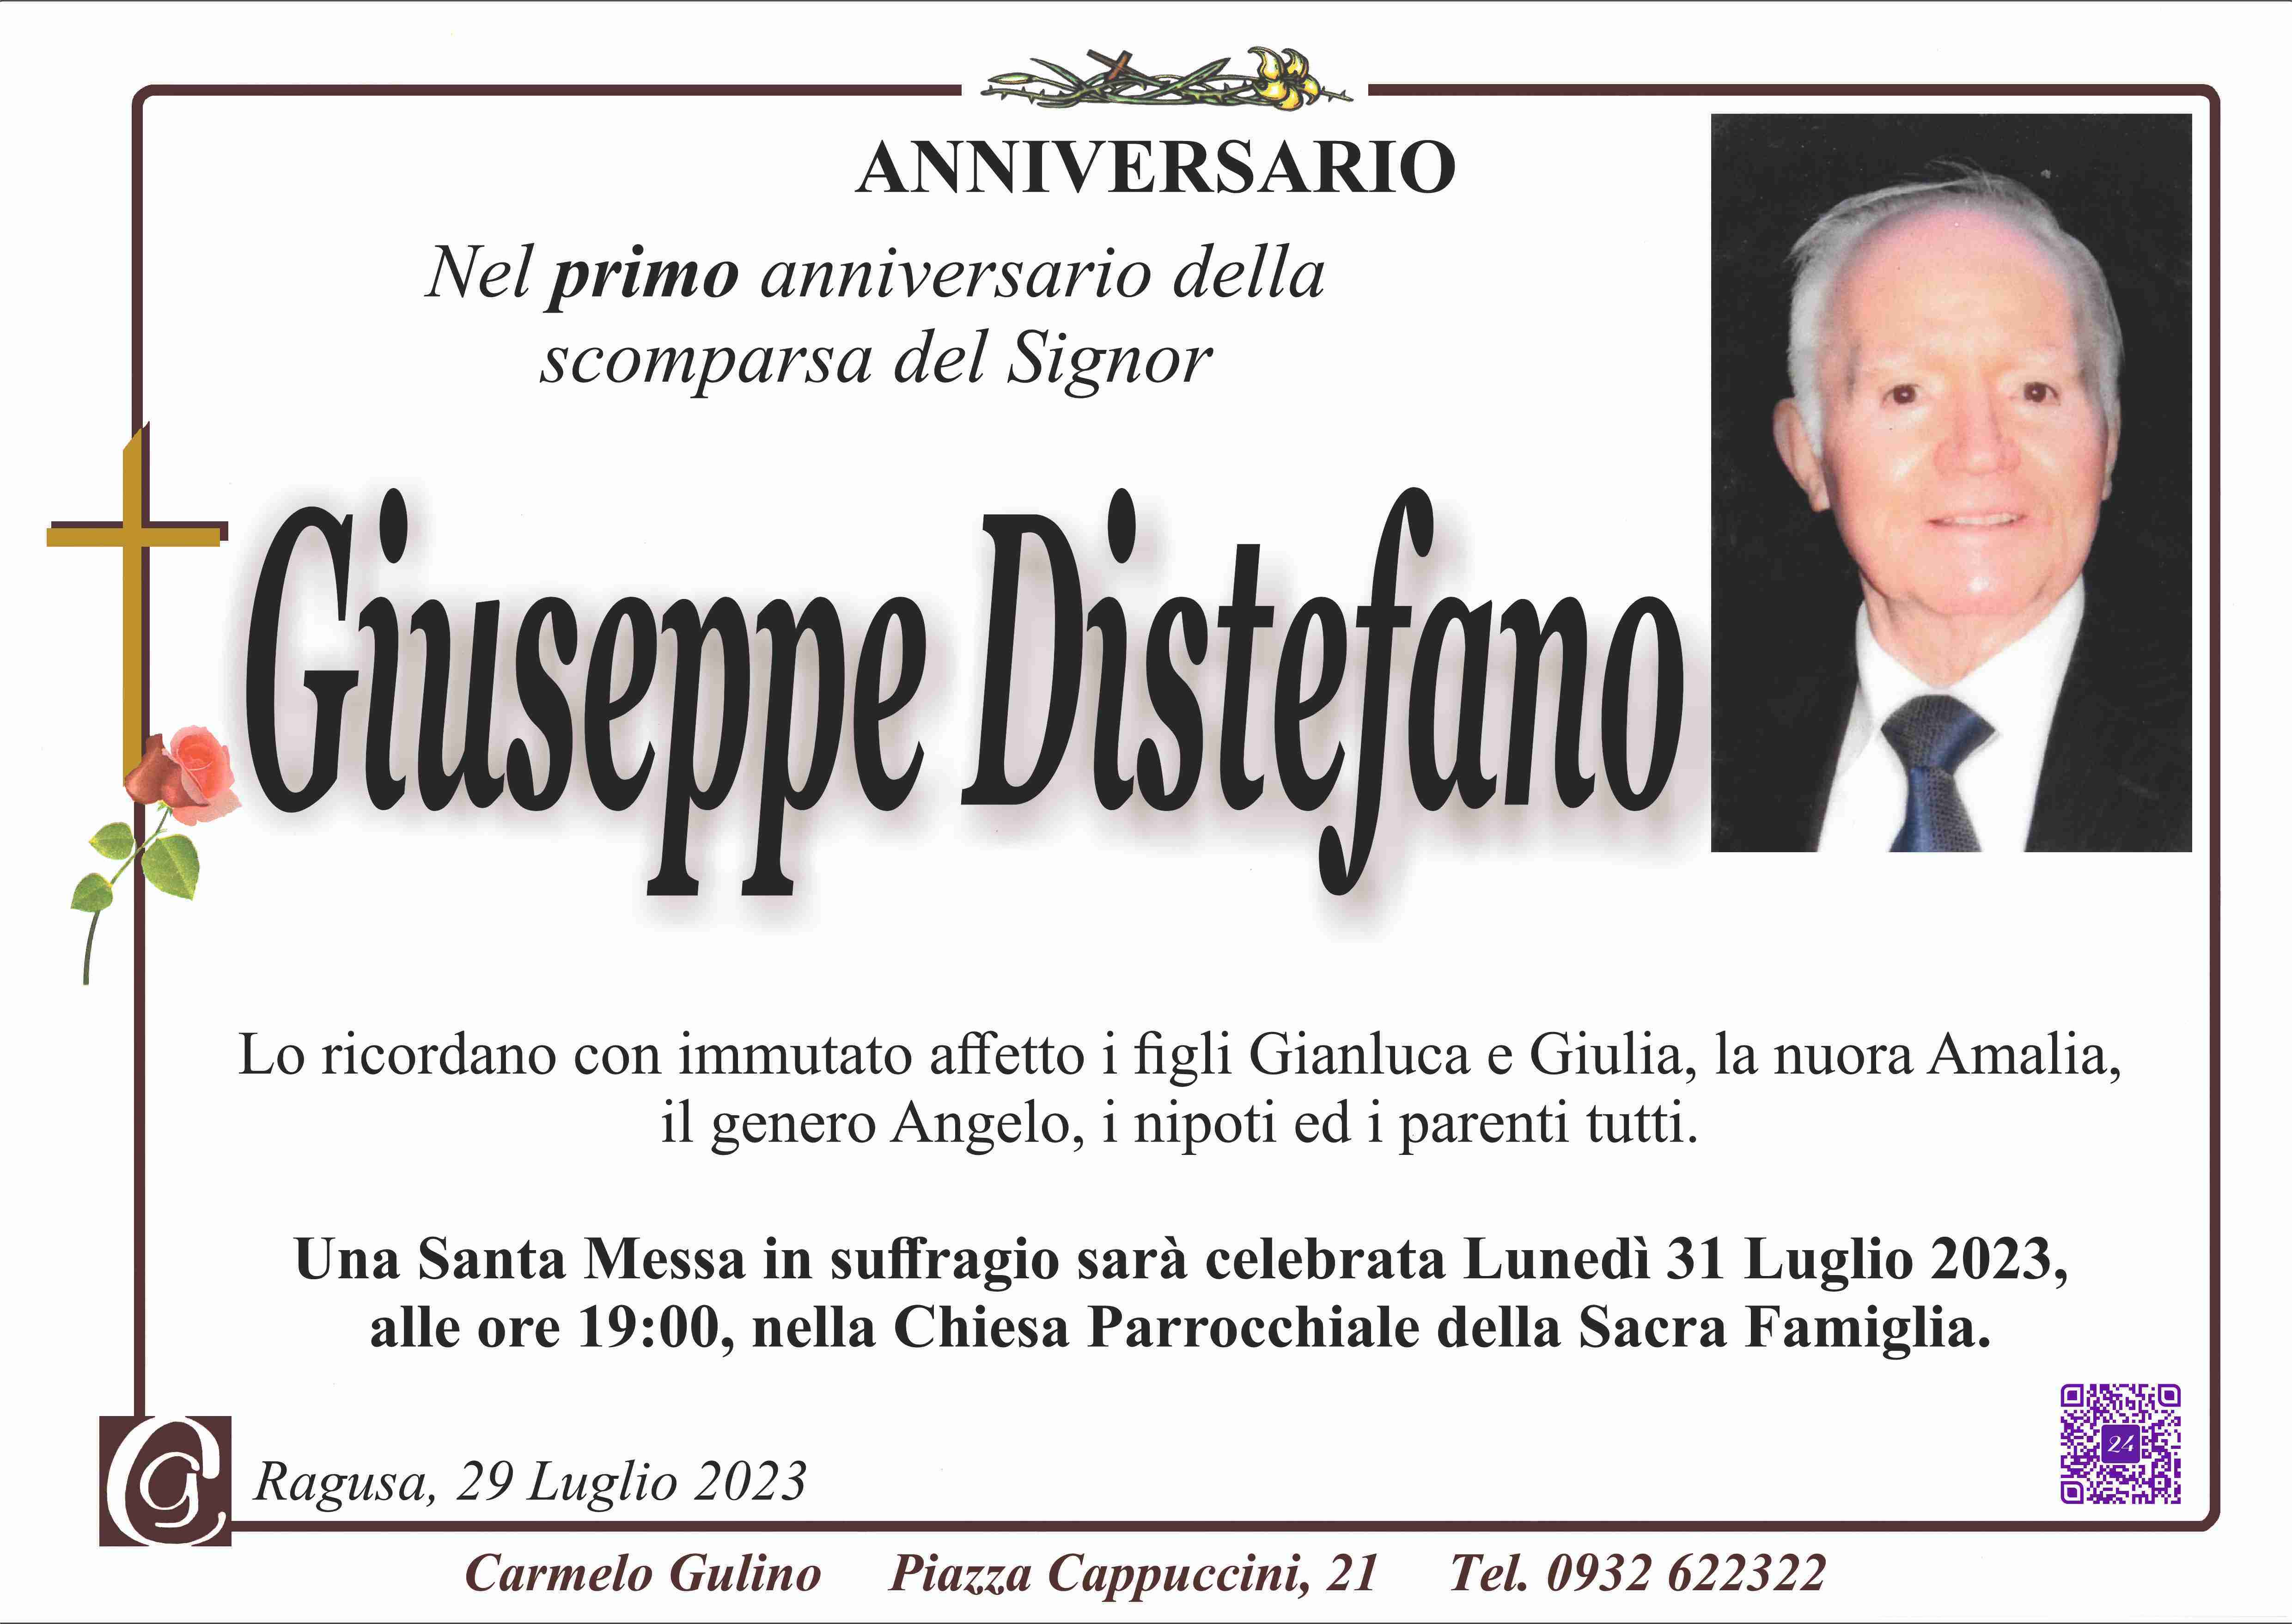 Giuseppe Distefano